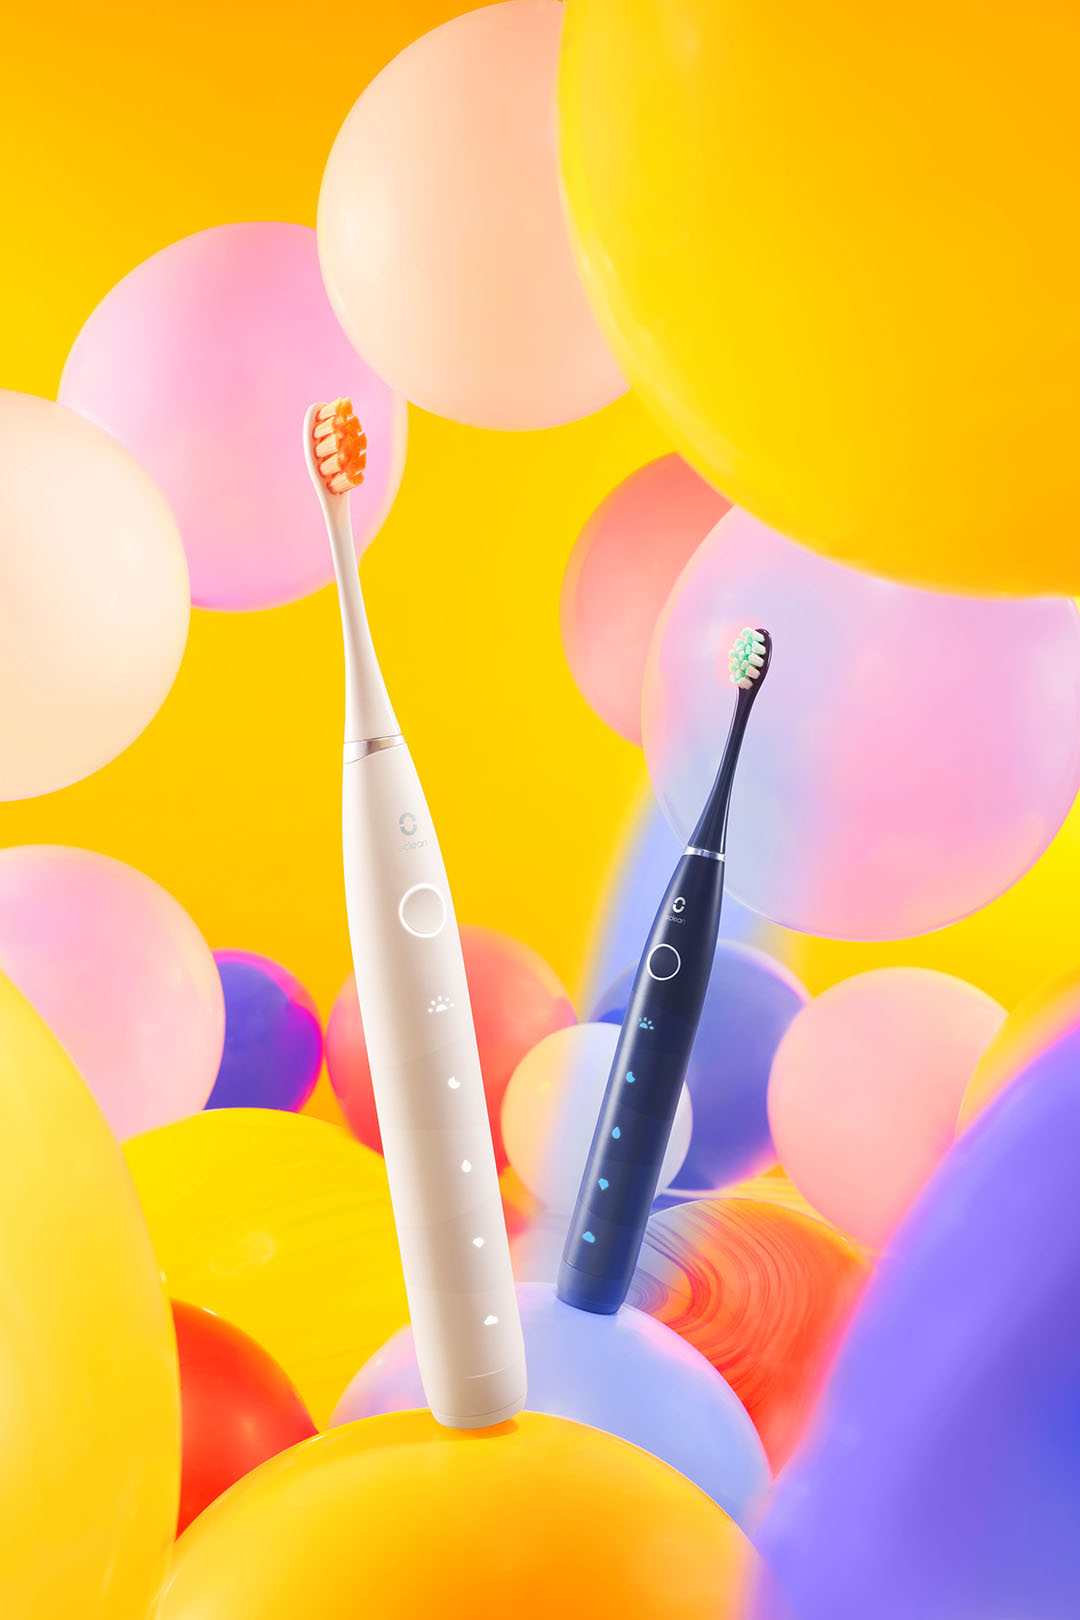 (6) Oclean「flow 音波電動牙刷」擁有霧白色及午夜藍雙色波紋刷柄設計外觀